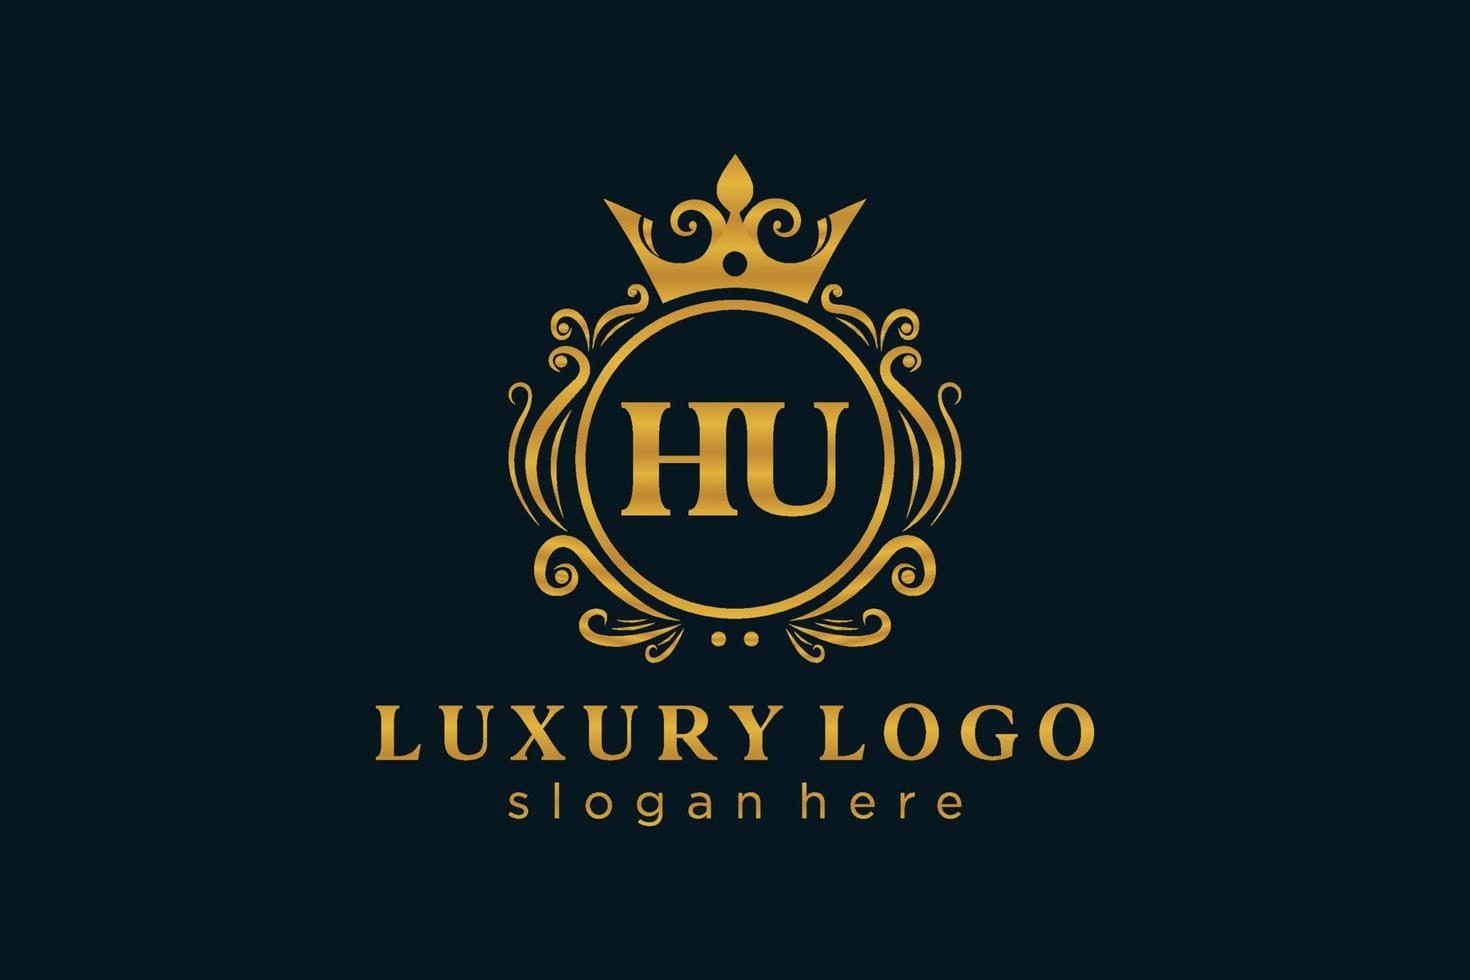 anfängliche hu-Buchstabe königliche Luxus-Logo-Vorlage in Vektorgrafiken für Restaurant, Lizenzgebühren, Boutique, Café, Hotel, heraldisch, Schmuck, Mode und andere Vektorillustrationen. vektor